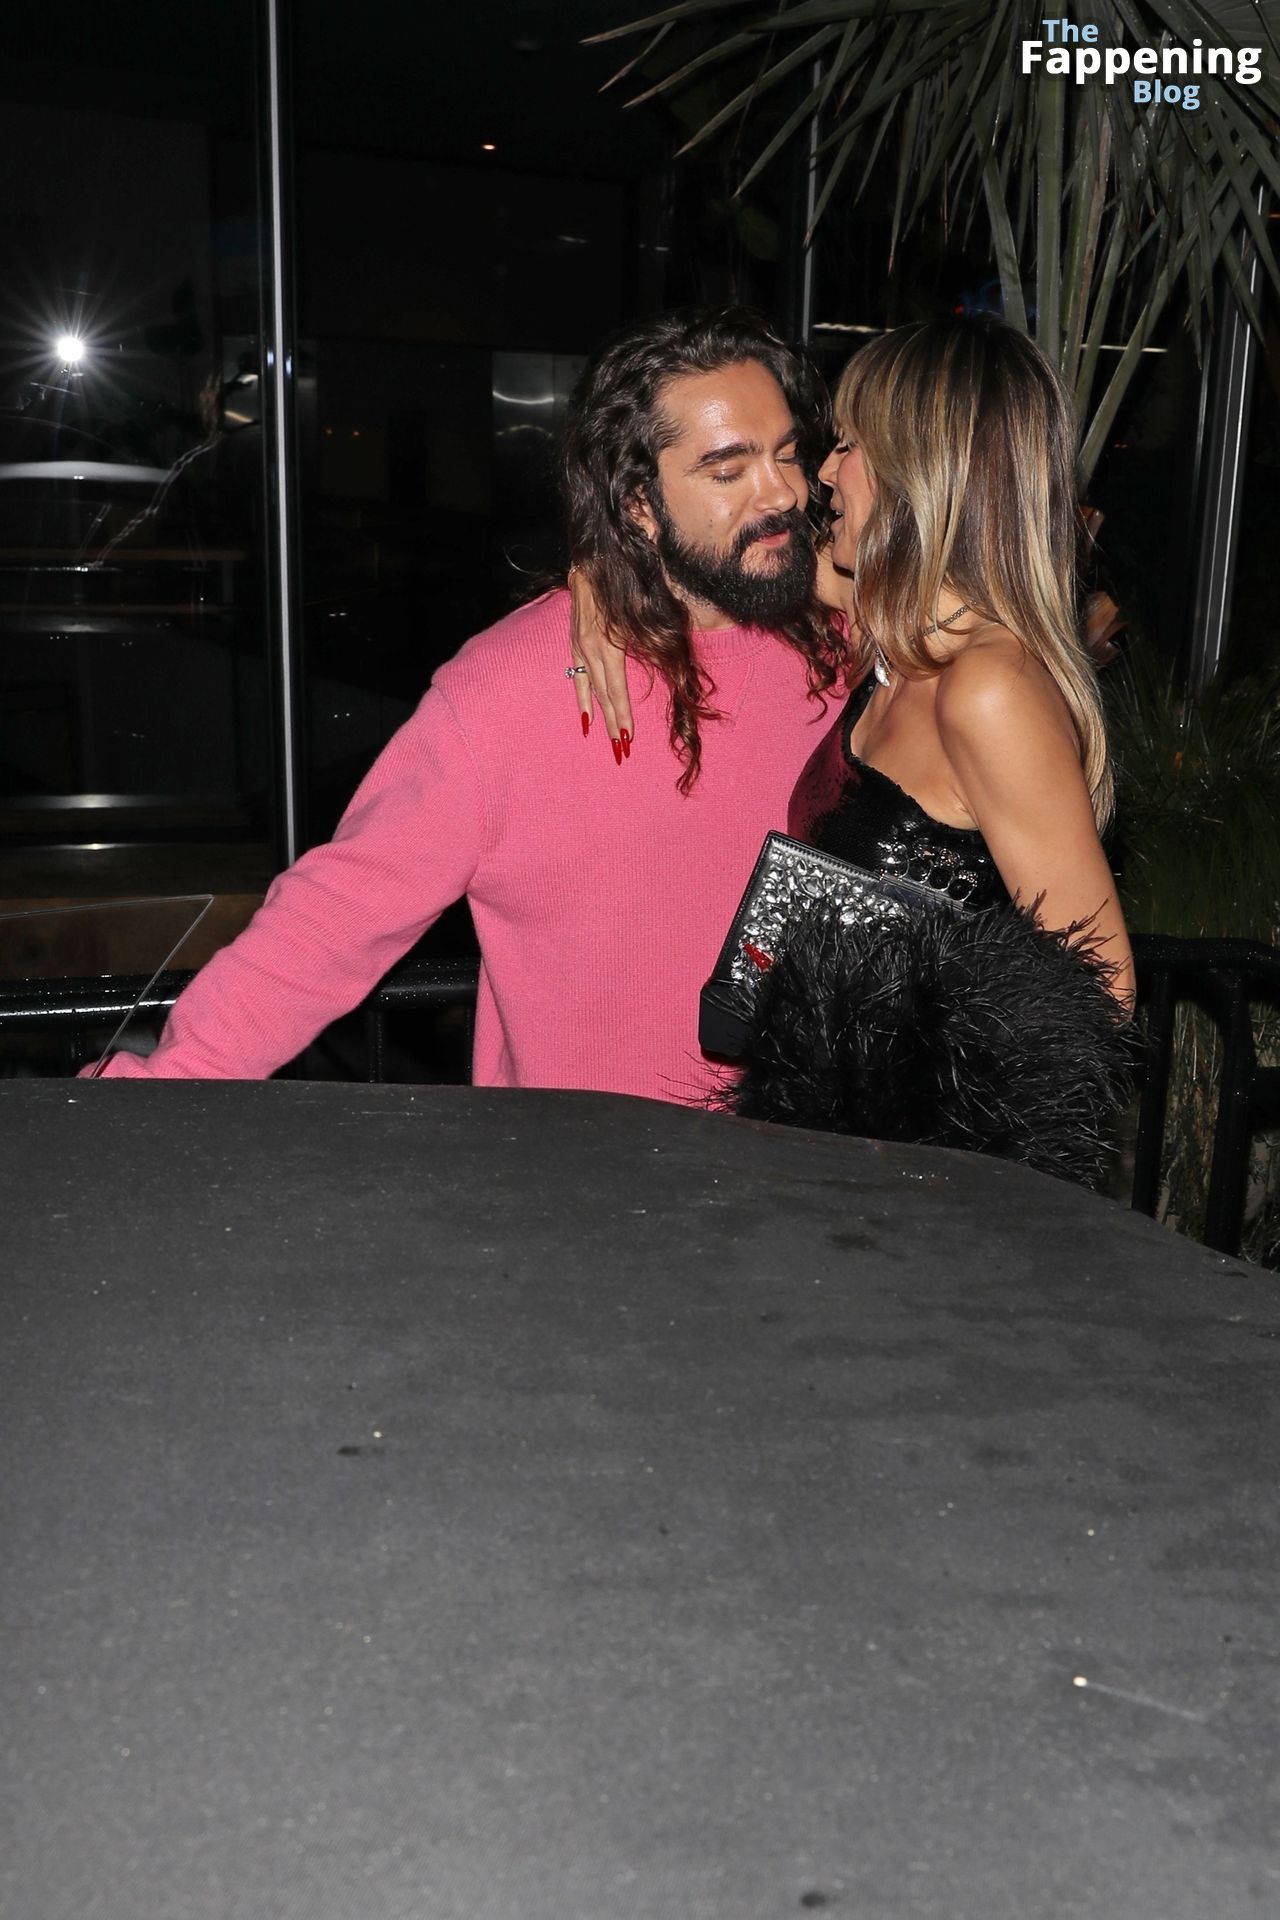 Heidi Klum Shares a Passionate Kiss with Tom Kaulitz After Having Dinner with Sofia Vergara (103 Photos)